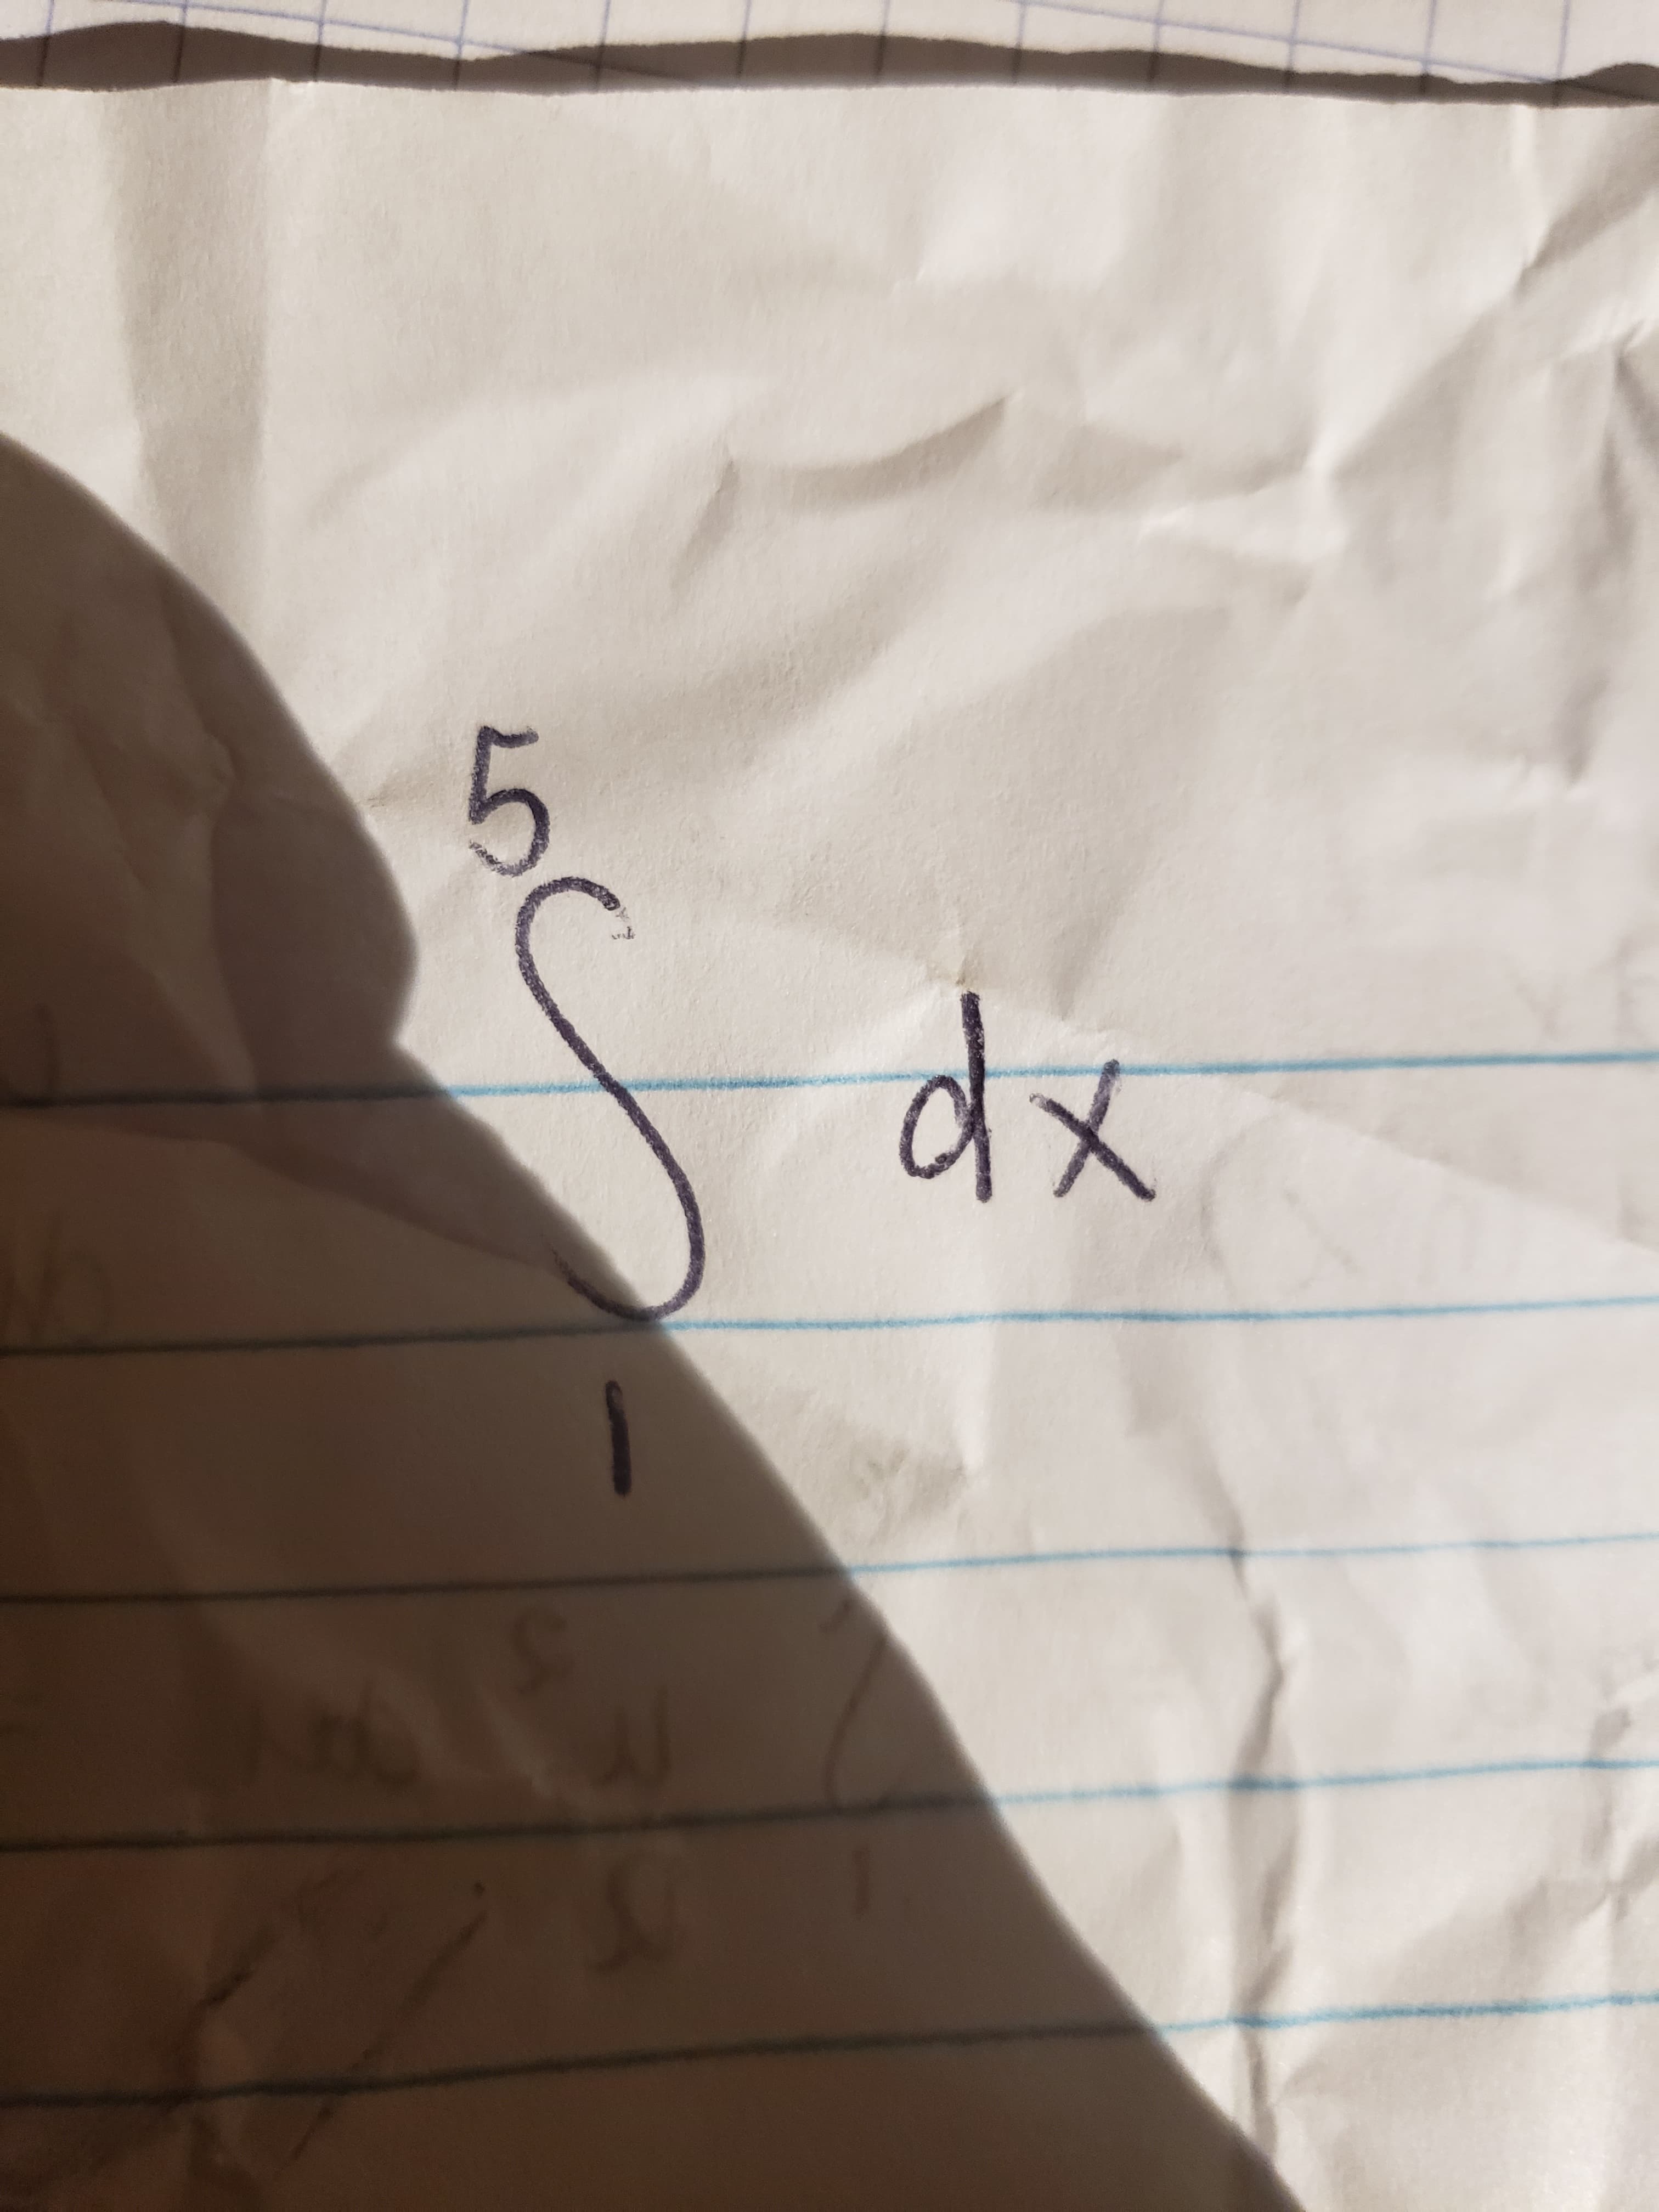 5
dx
